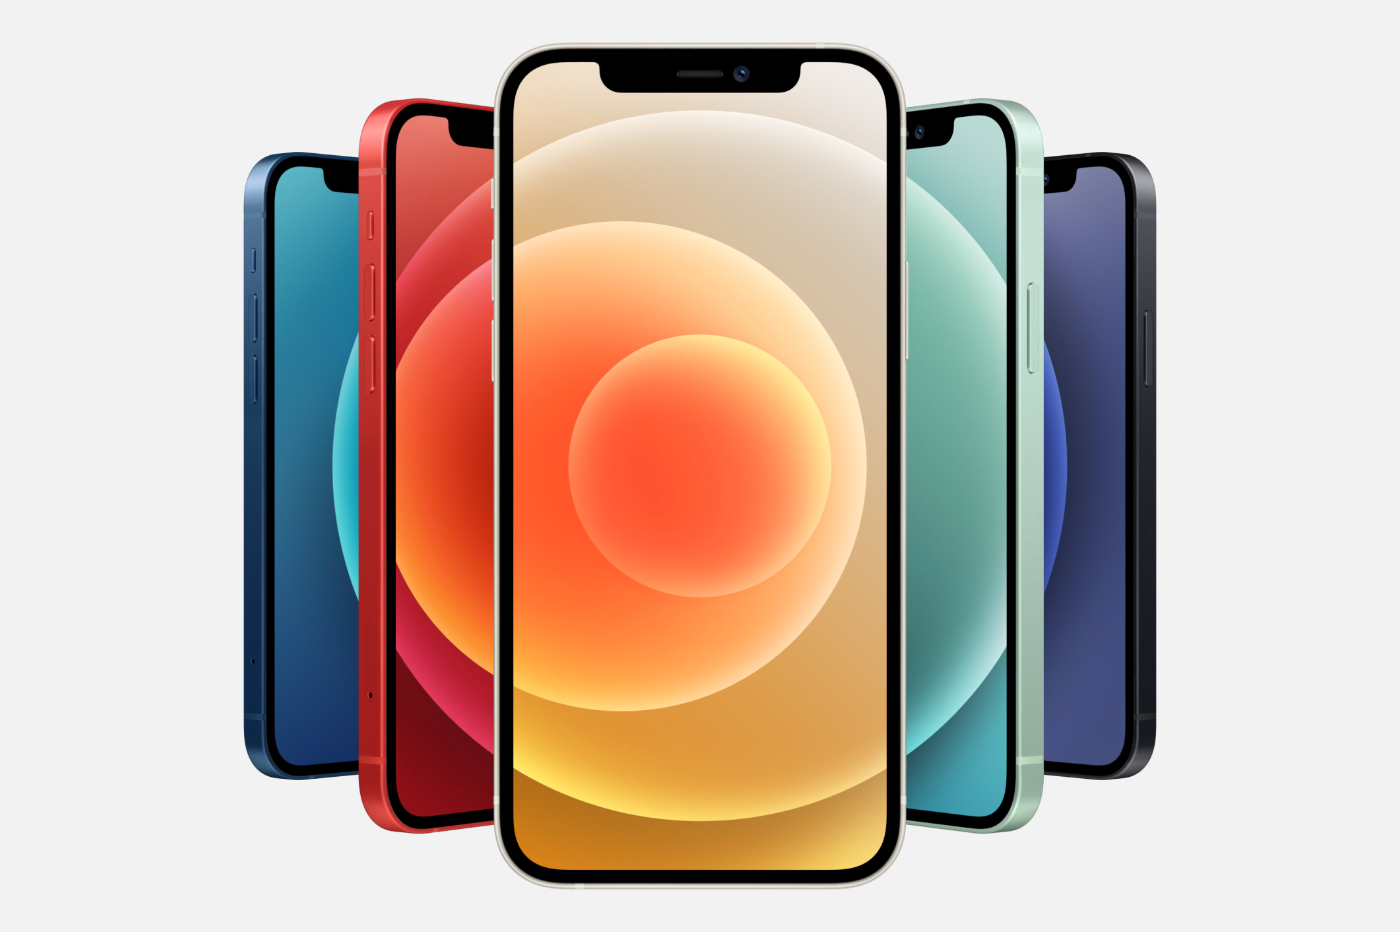 Gamme Apple iPhone 12 avec ses coloris